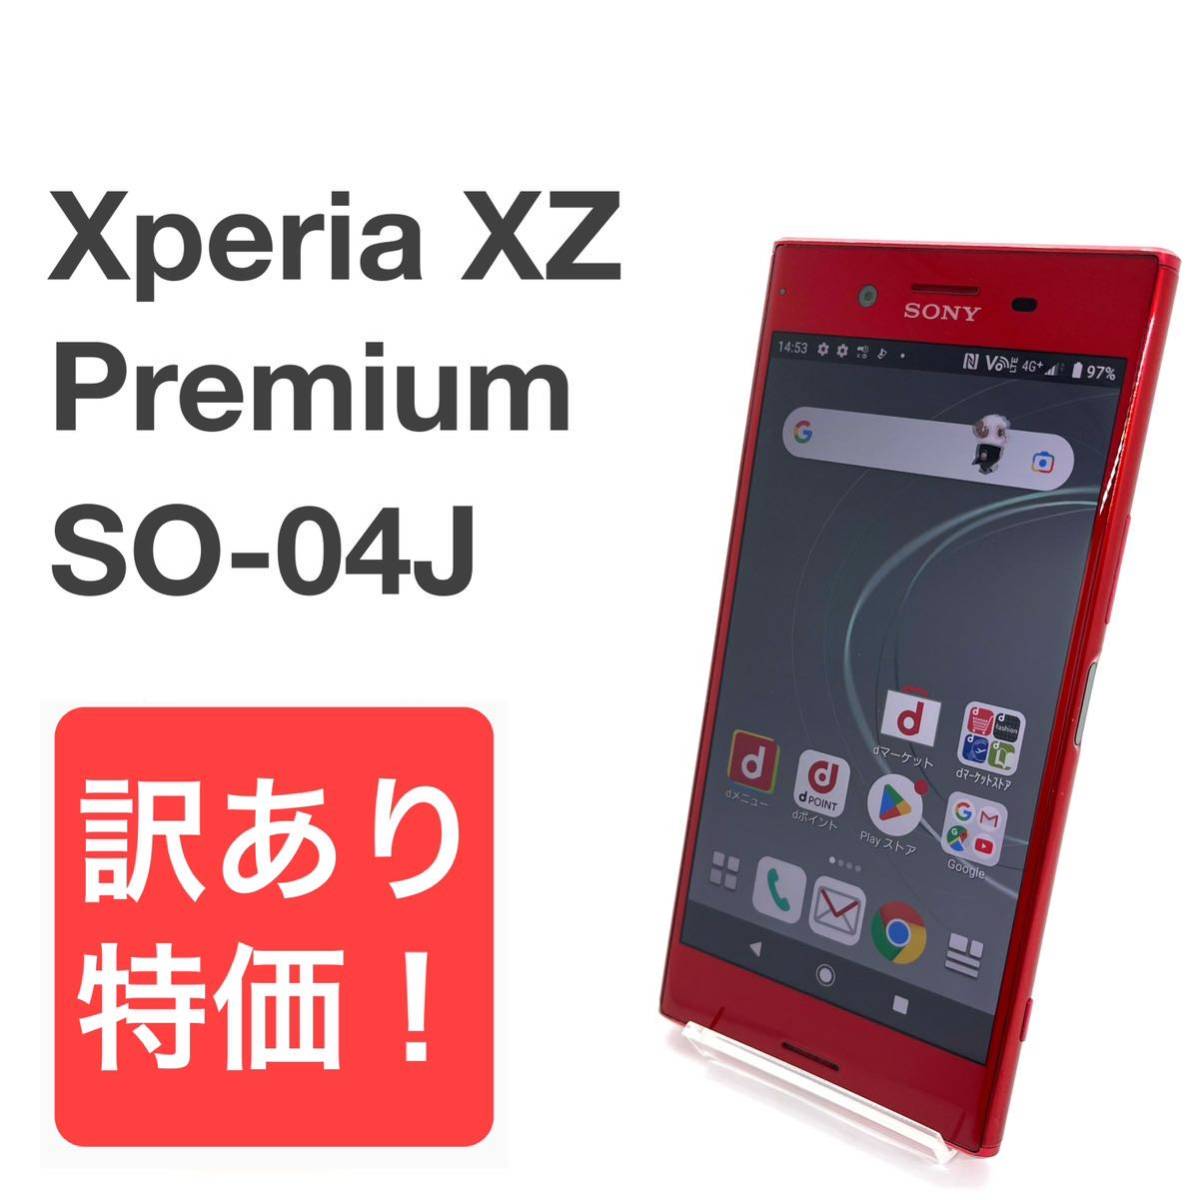 ♦ Xperia XZ3 64GB 白 本体＋Evutecケース＋保護ガラス